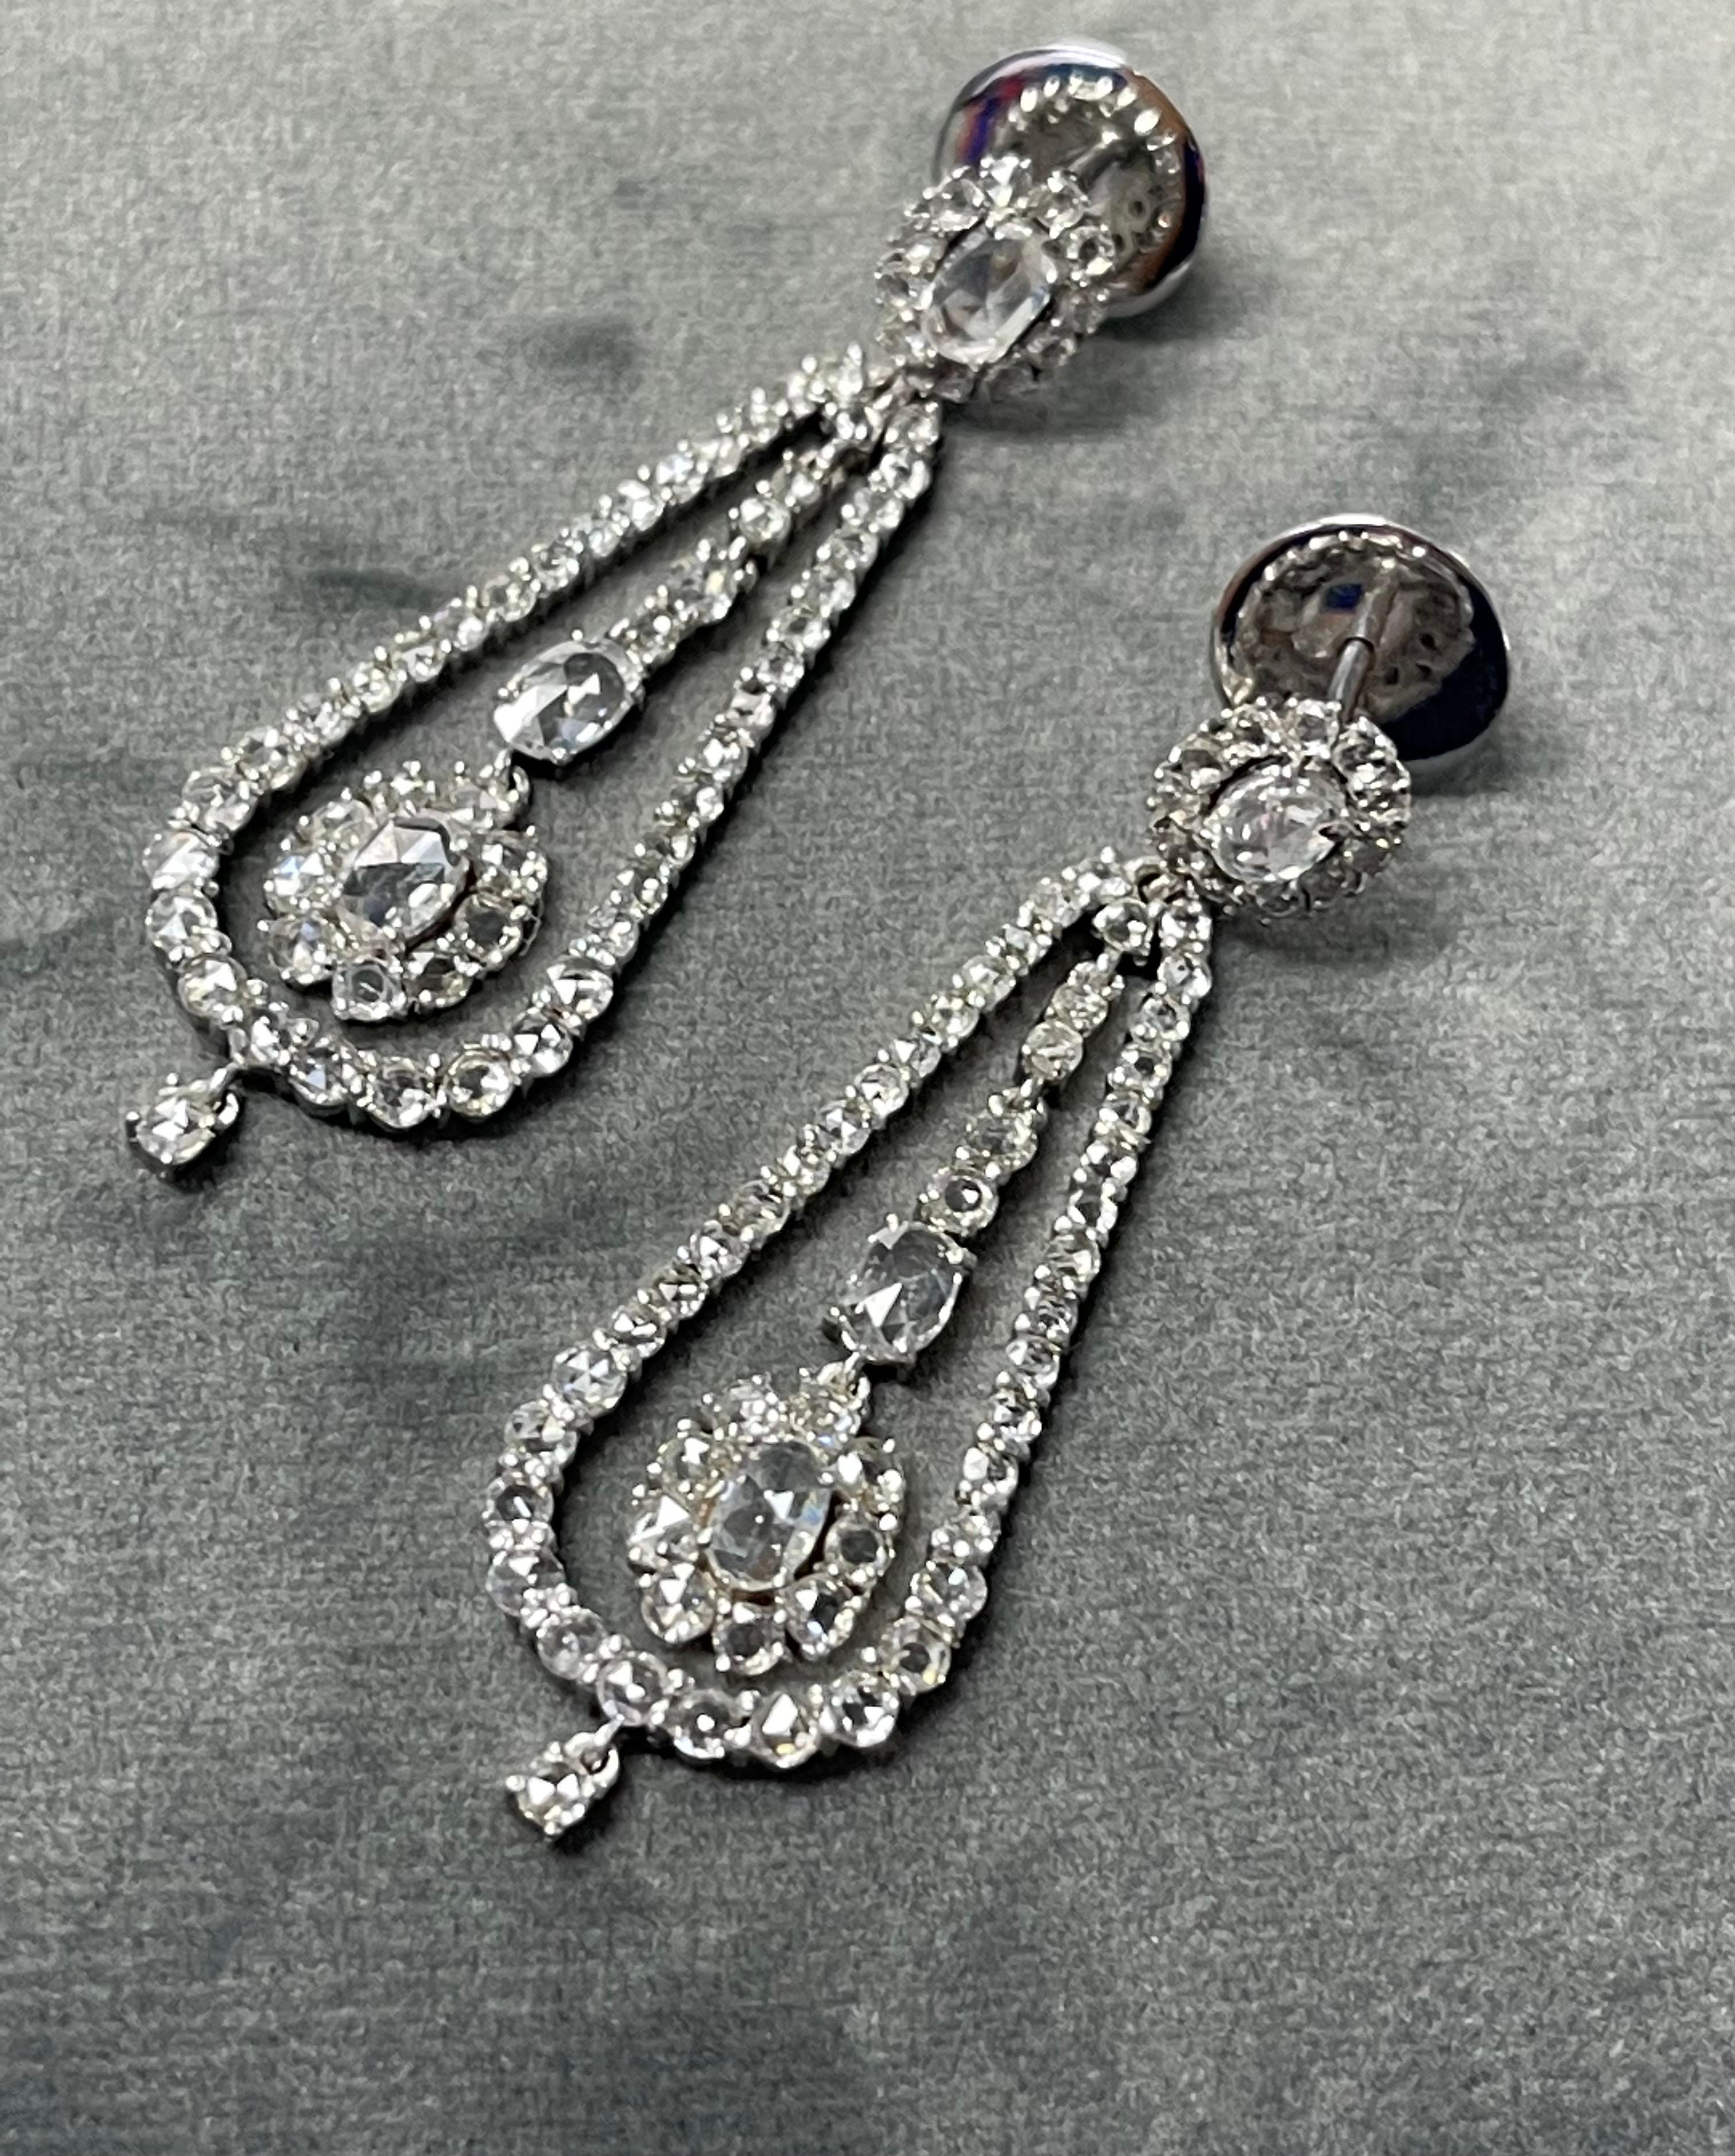 Rose Cut Diamond Chandelier Earrings In 18K White Gold.  For Sale 8